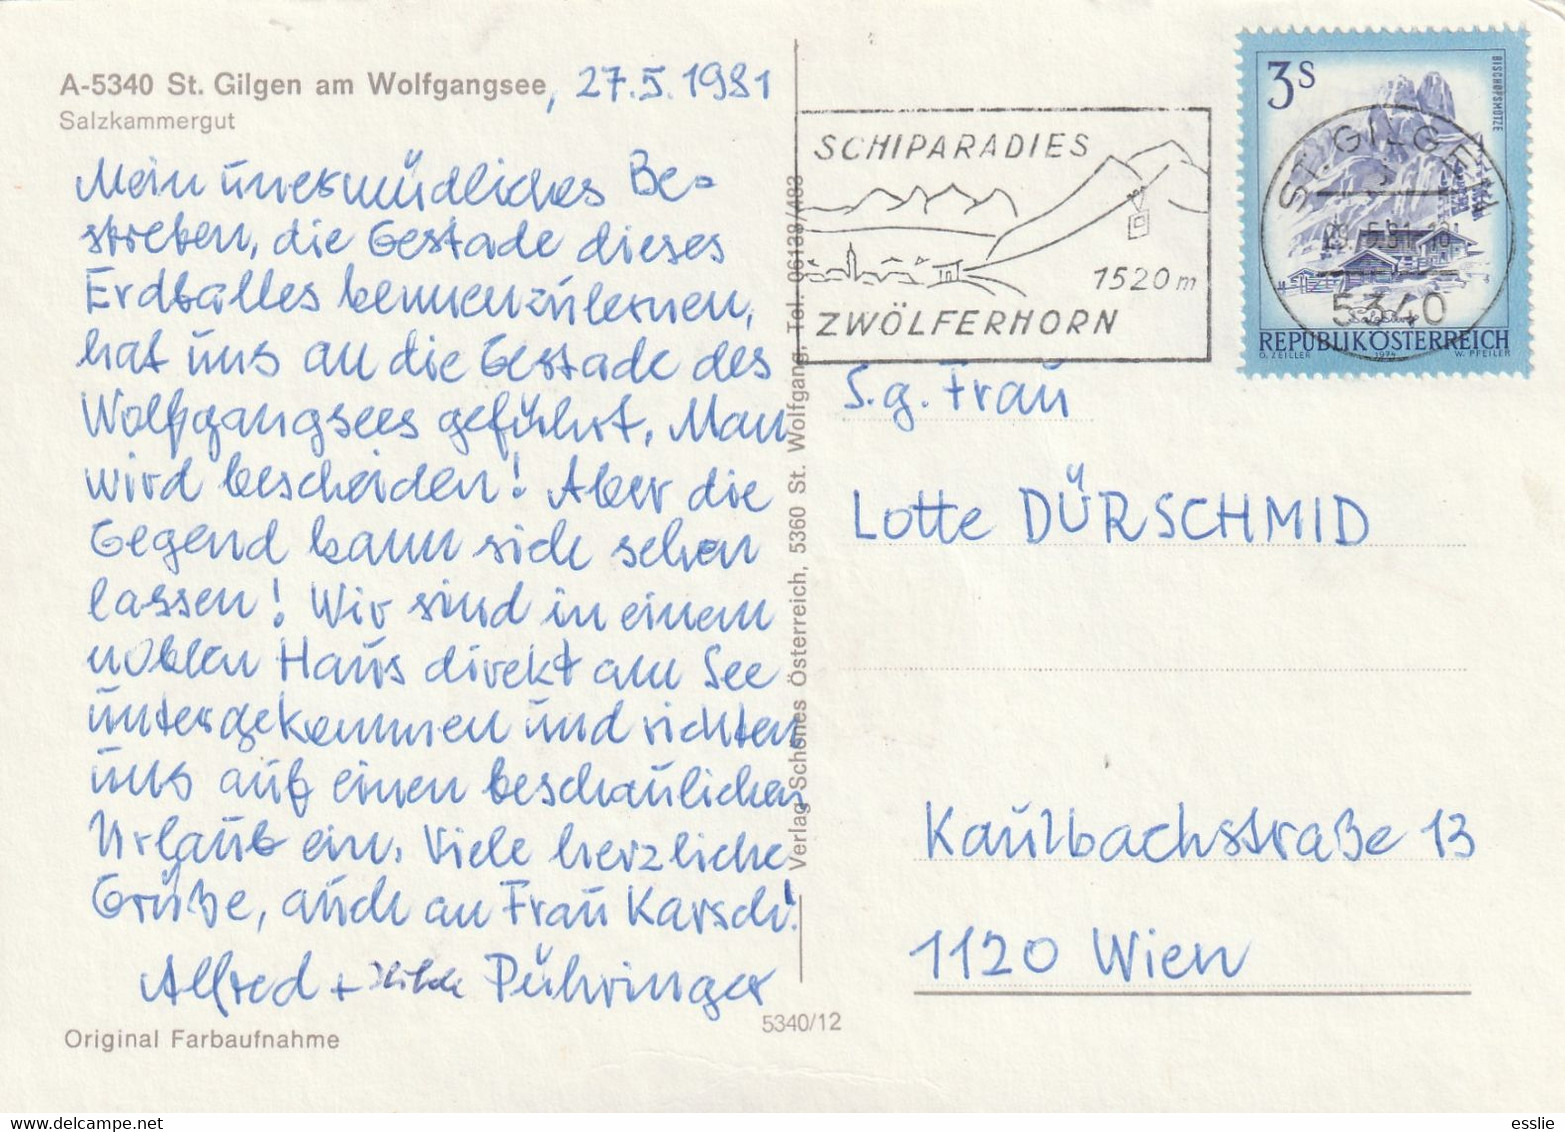 Austria St Gilgen Am Wolfgangsee - Postcard Post Card - 1981 - Salzkammergut - St. Gilgen